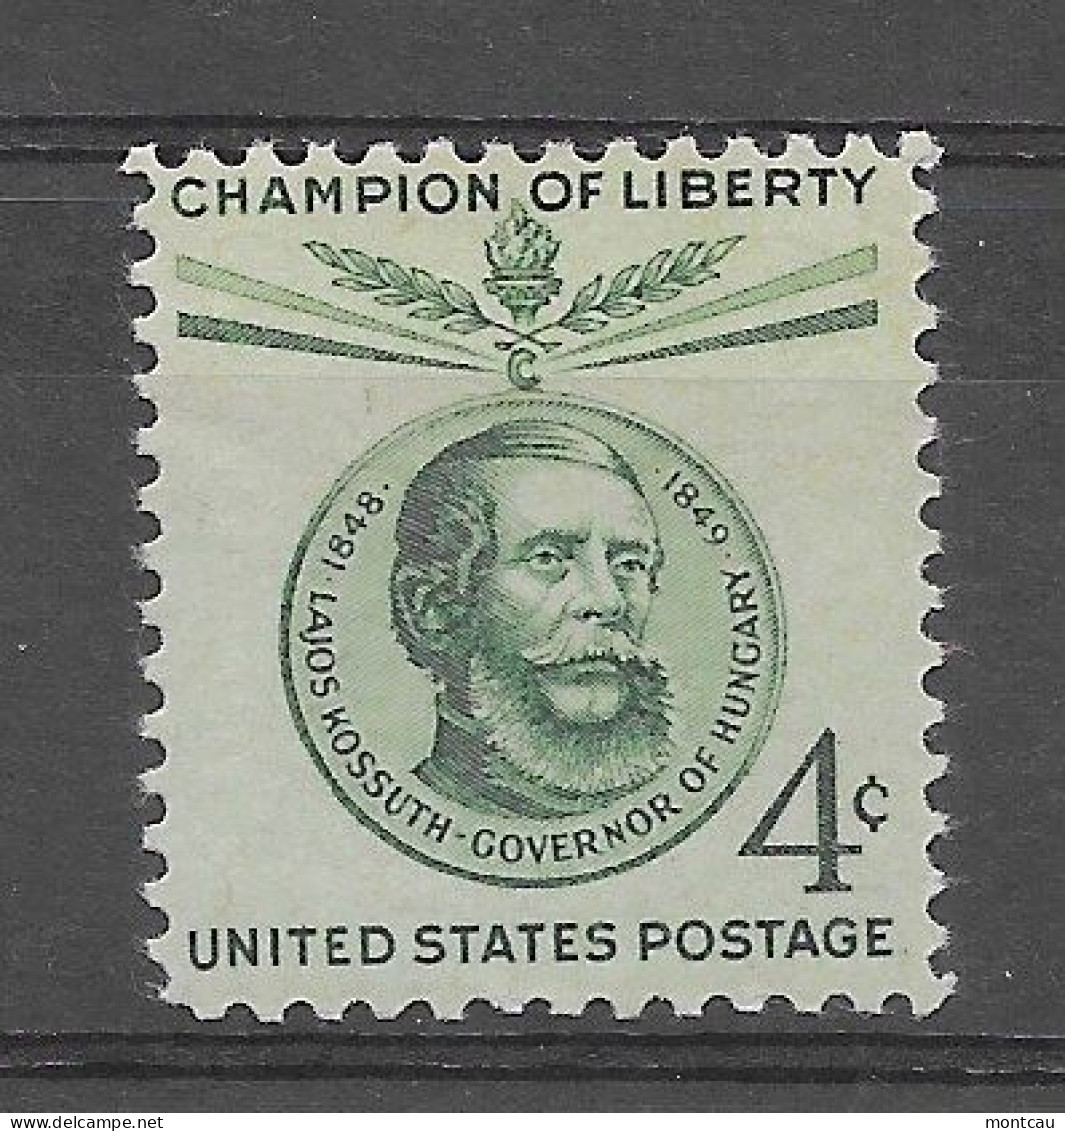 USA 1958.  Kossuth Sc 1117  (**) - Unused Stamps